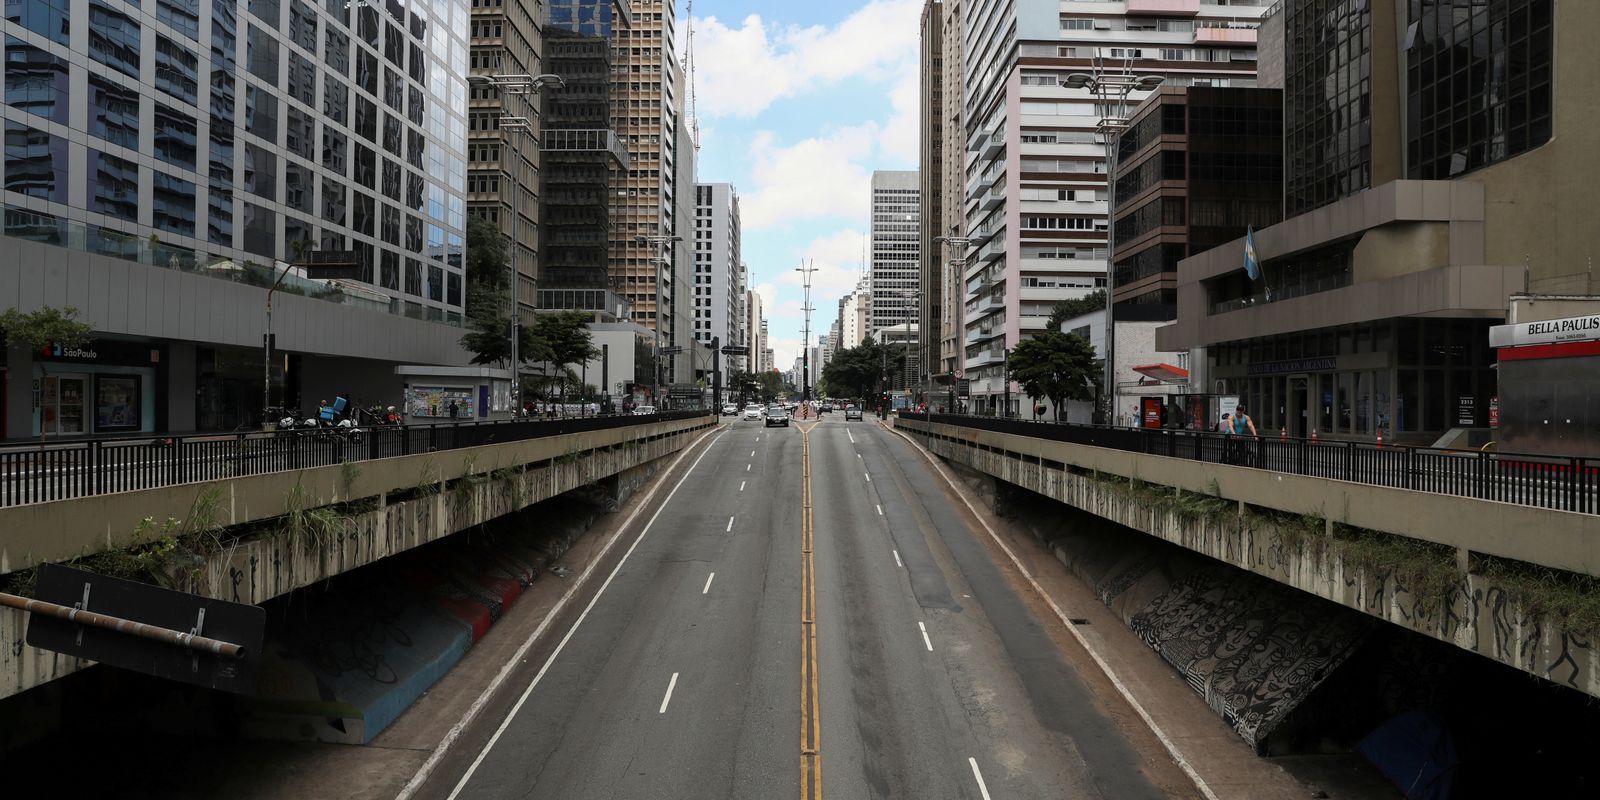 Órgão da prefeitura de São Paulo quer garantir direito à